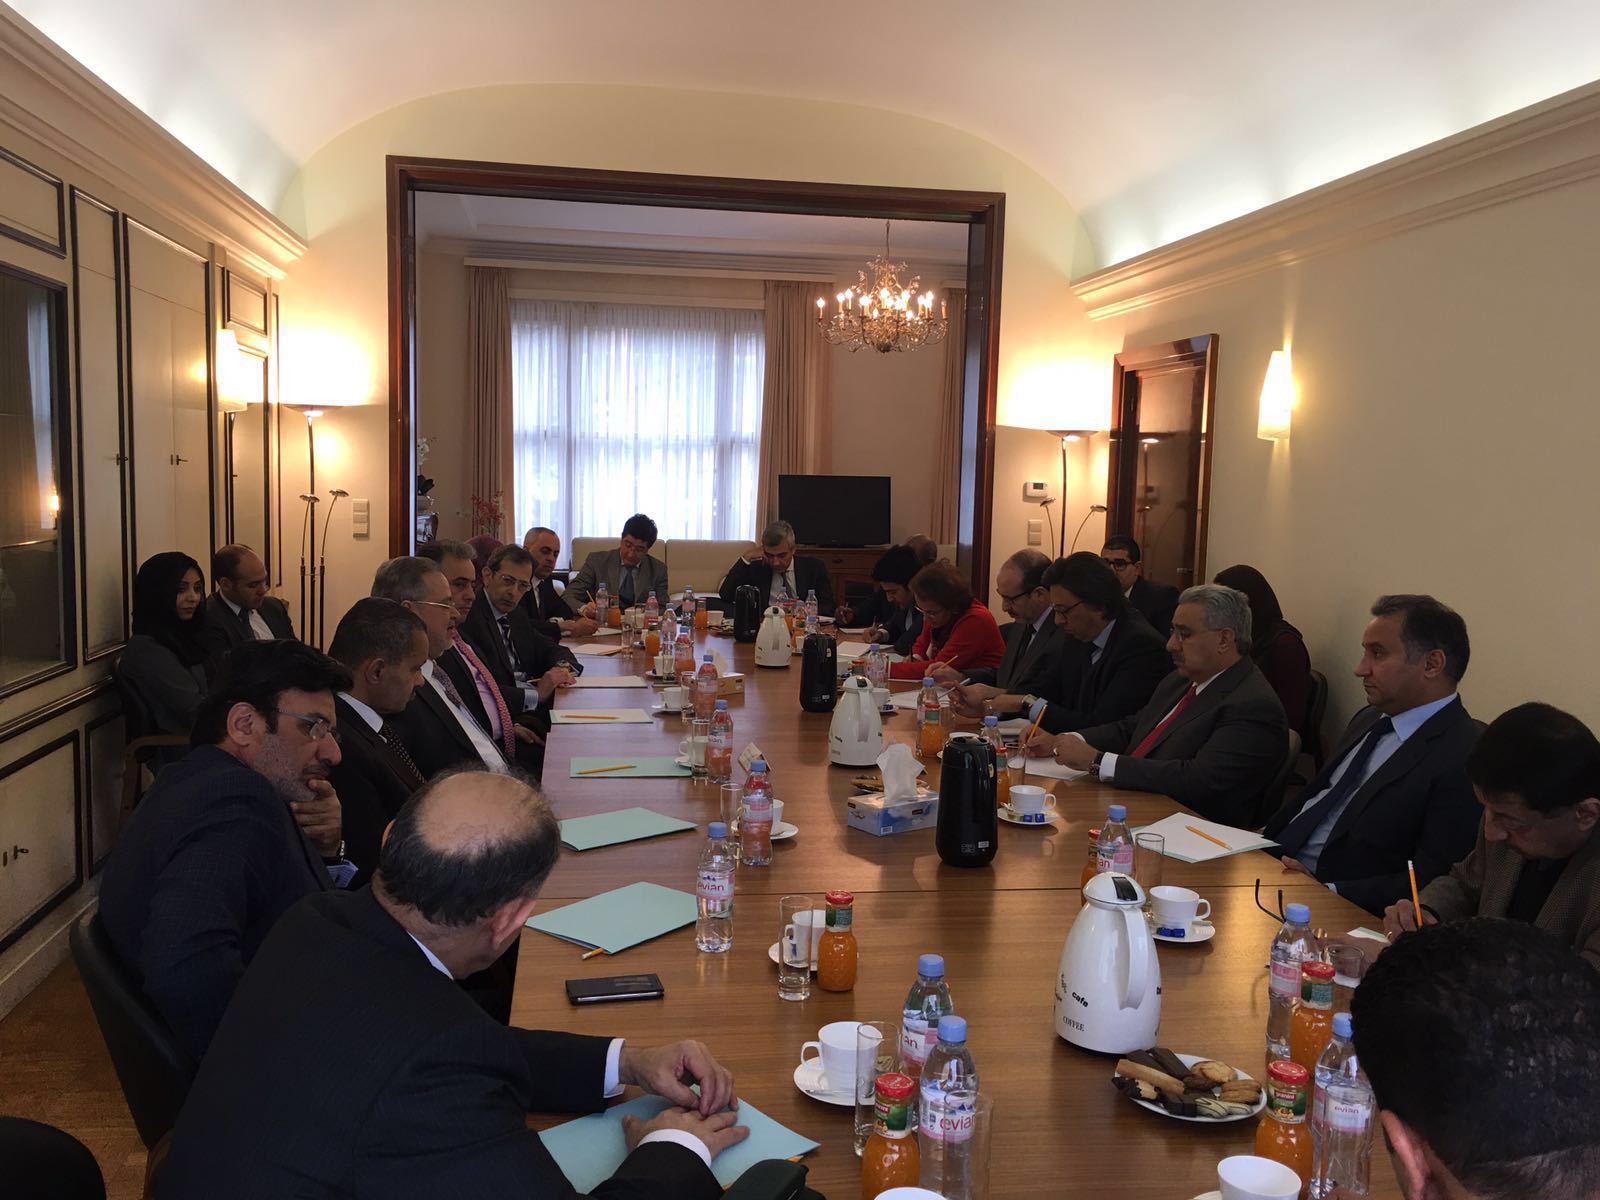 وزير الخارجية يلتقي البعثة الدبلوماسية العربية في بلجيكا ويحثهم على مساندة اليمن